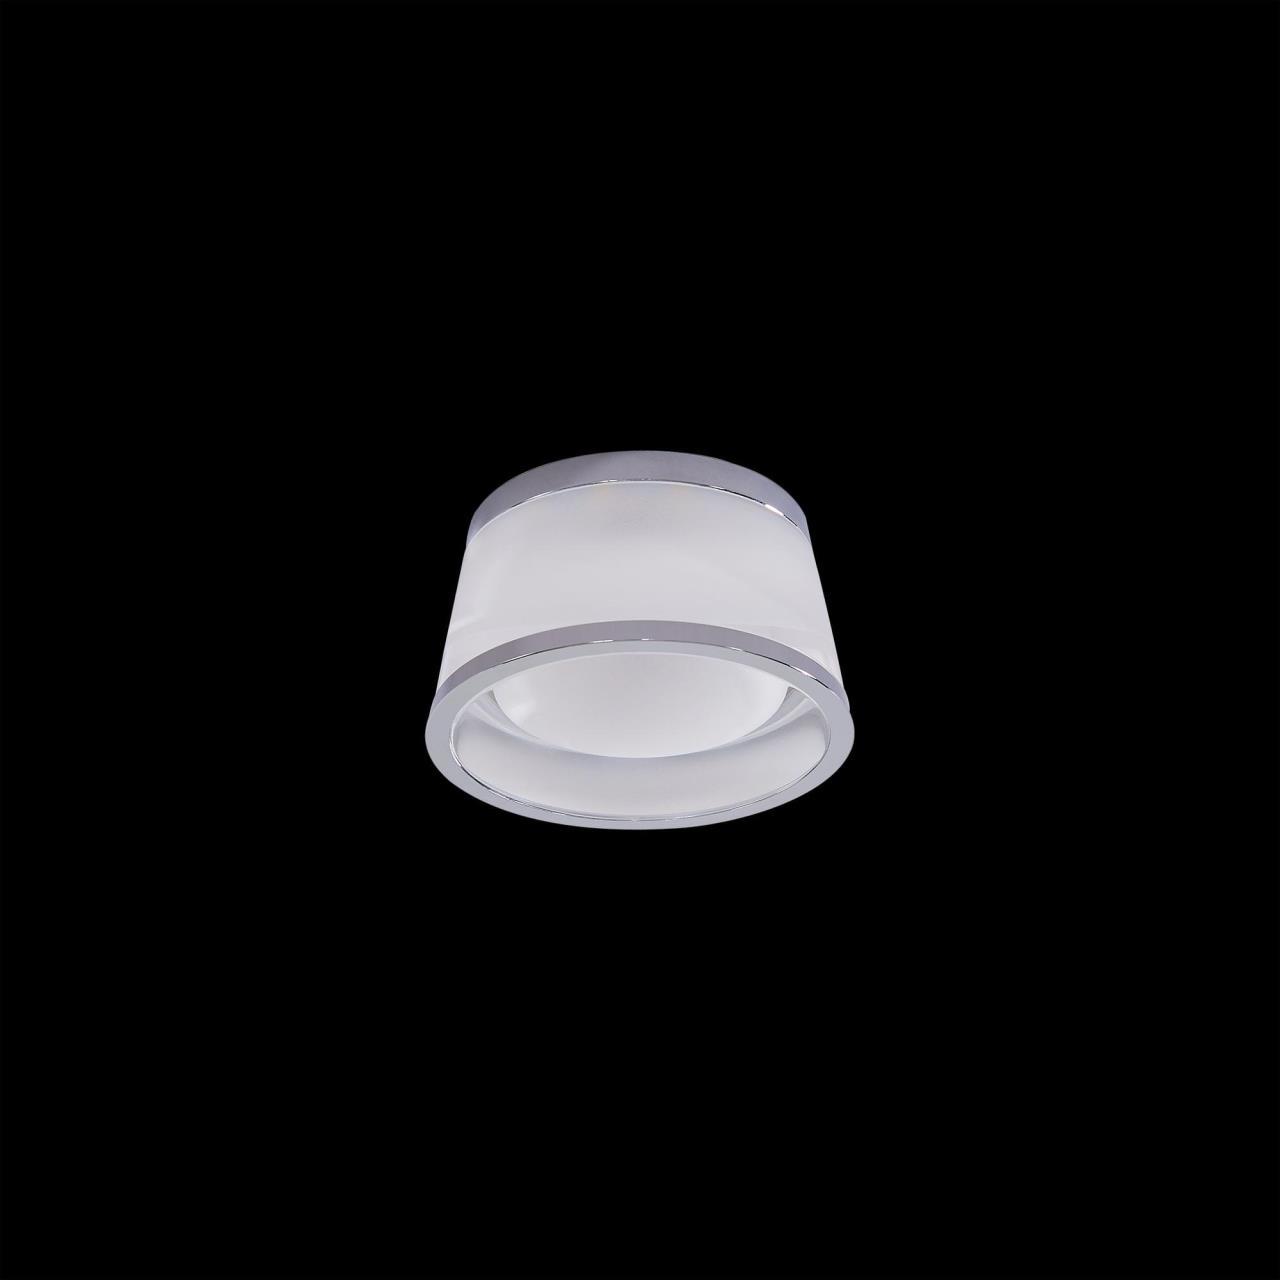 Встраиваемый светодиодный светильник Citilux Сигма CLD003S1, LED 5W 3000K 325lm, хром, белый, металл, стекло - фото 3